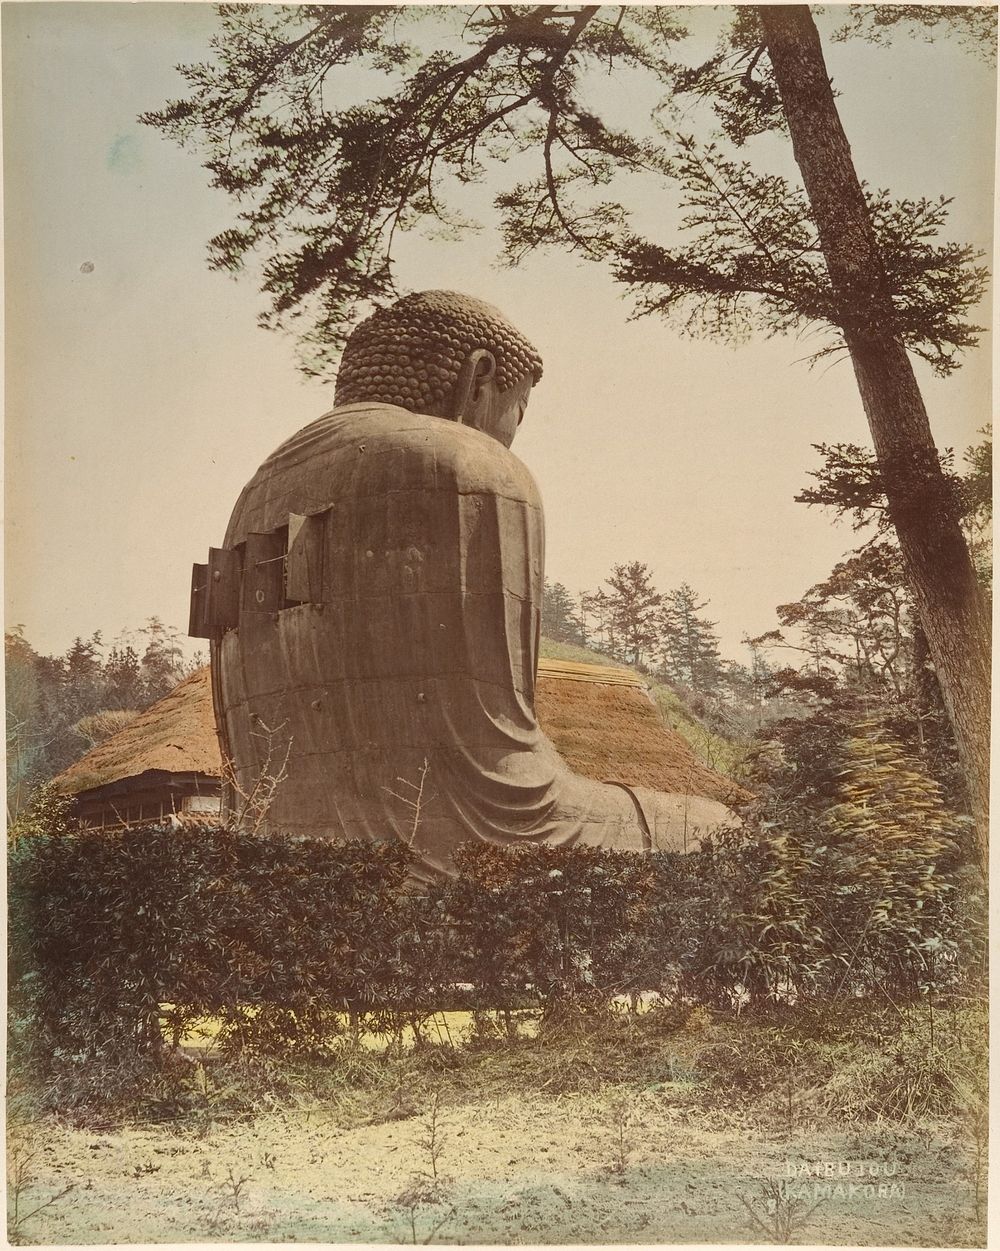 Landscape with Buddha Sculpture by Suzuki Shin'ichi